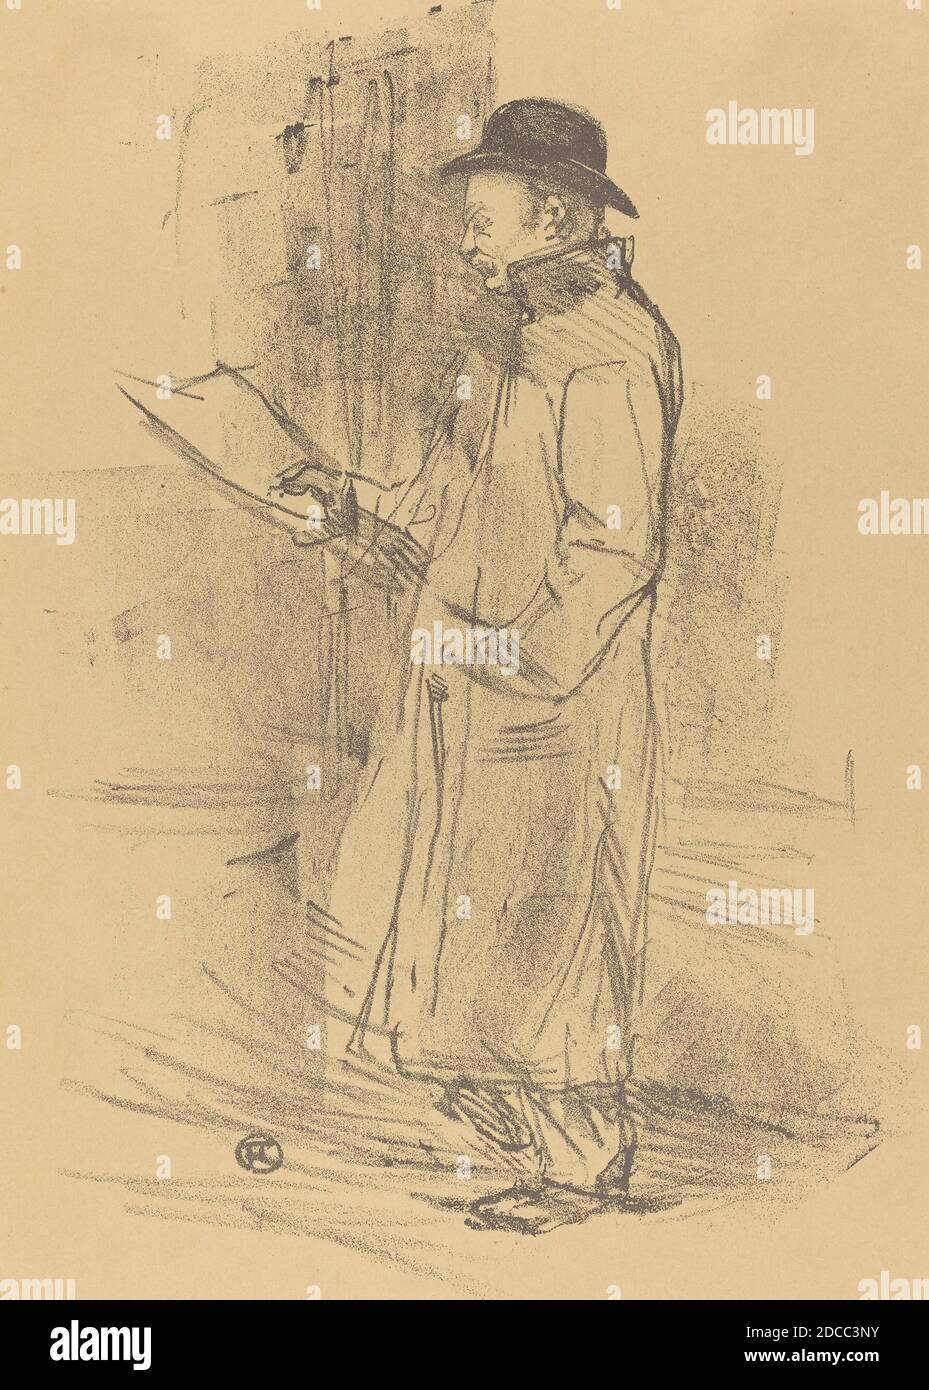 Henri de Toulouse-Lautrec, (artist), French, 1864 - 1901, Program for 'Benefice Gemier' (Programme du 'Bénéfice Gémier'), 1897, lithograph in black on velin paper Stock Photo